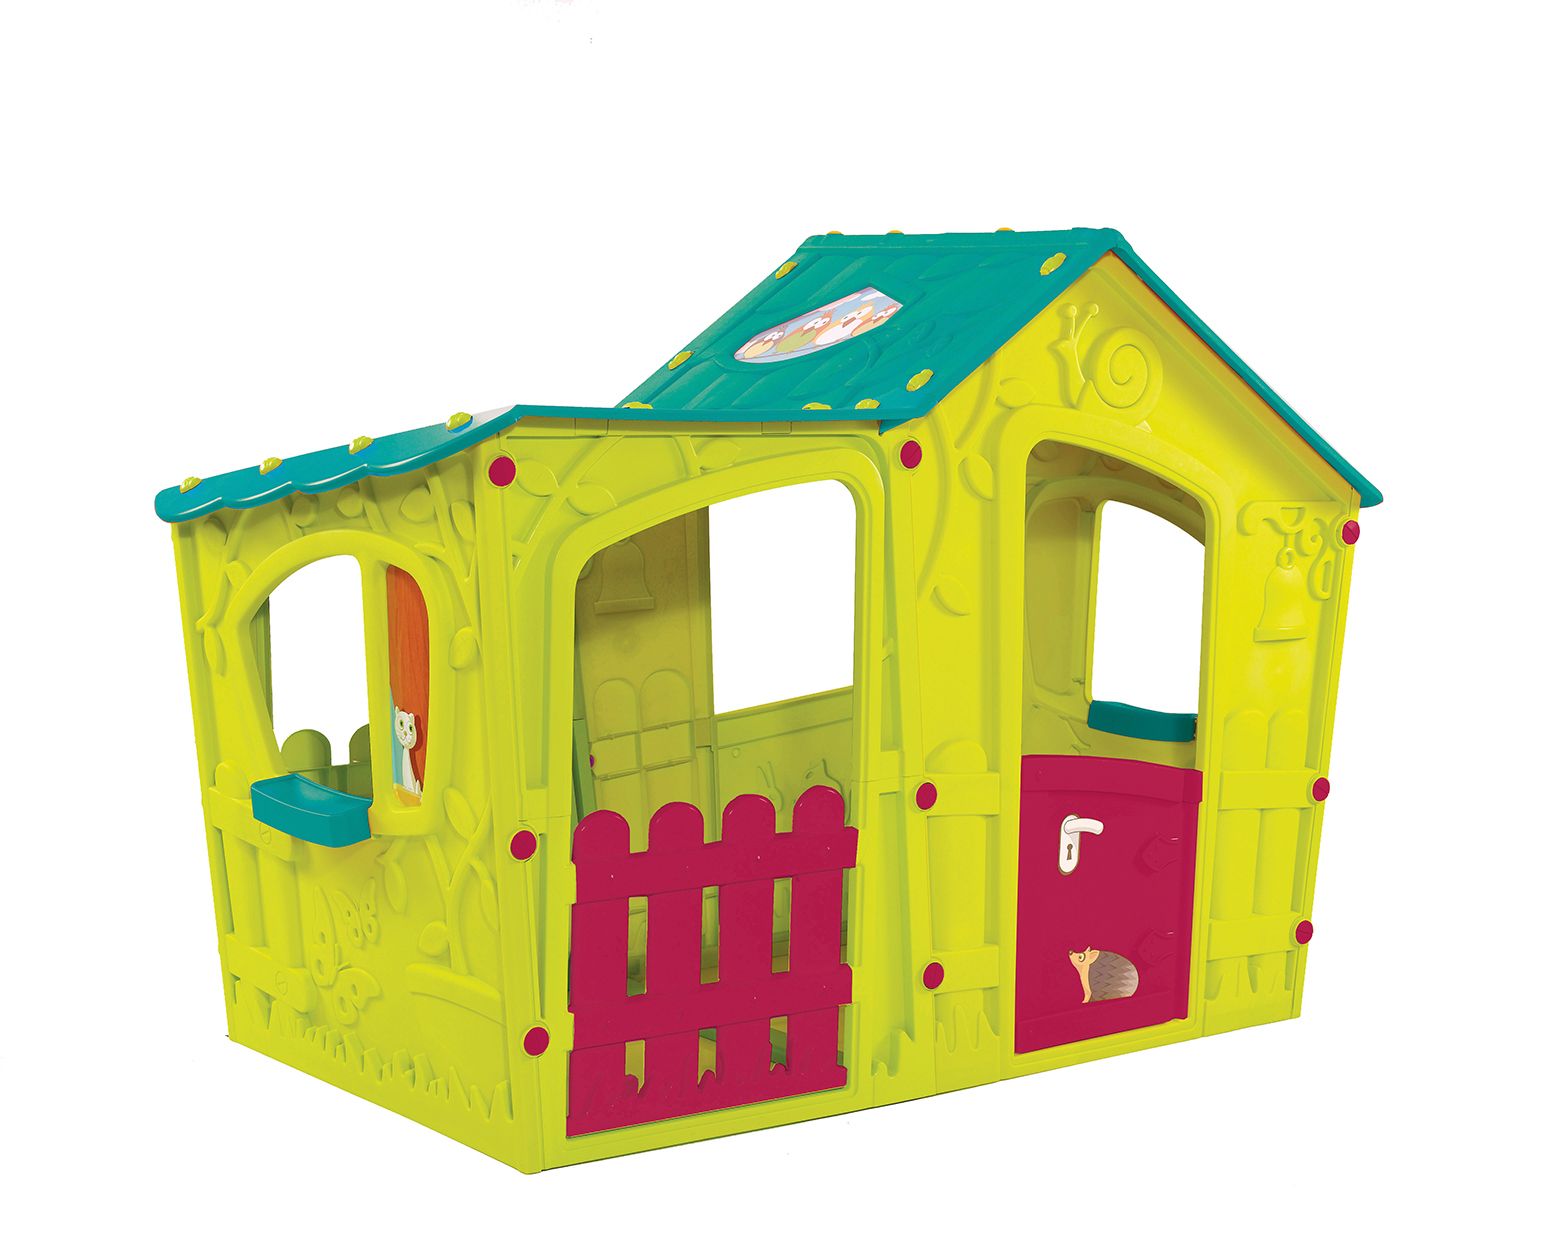 Keter Bērnu rotaļu māja Magic Villa zaļa/tirkīza 29190655732 Rotaļu mājas un slidkalniņi